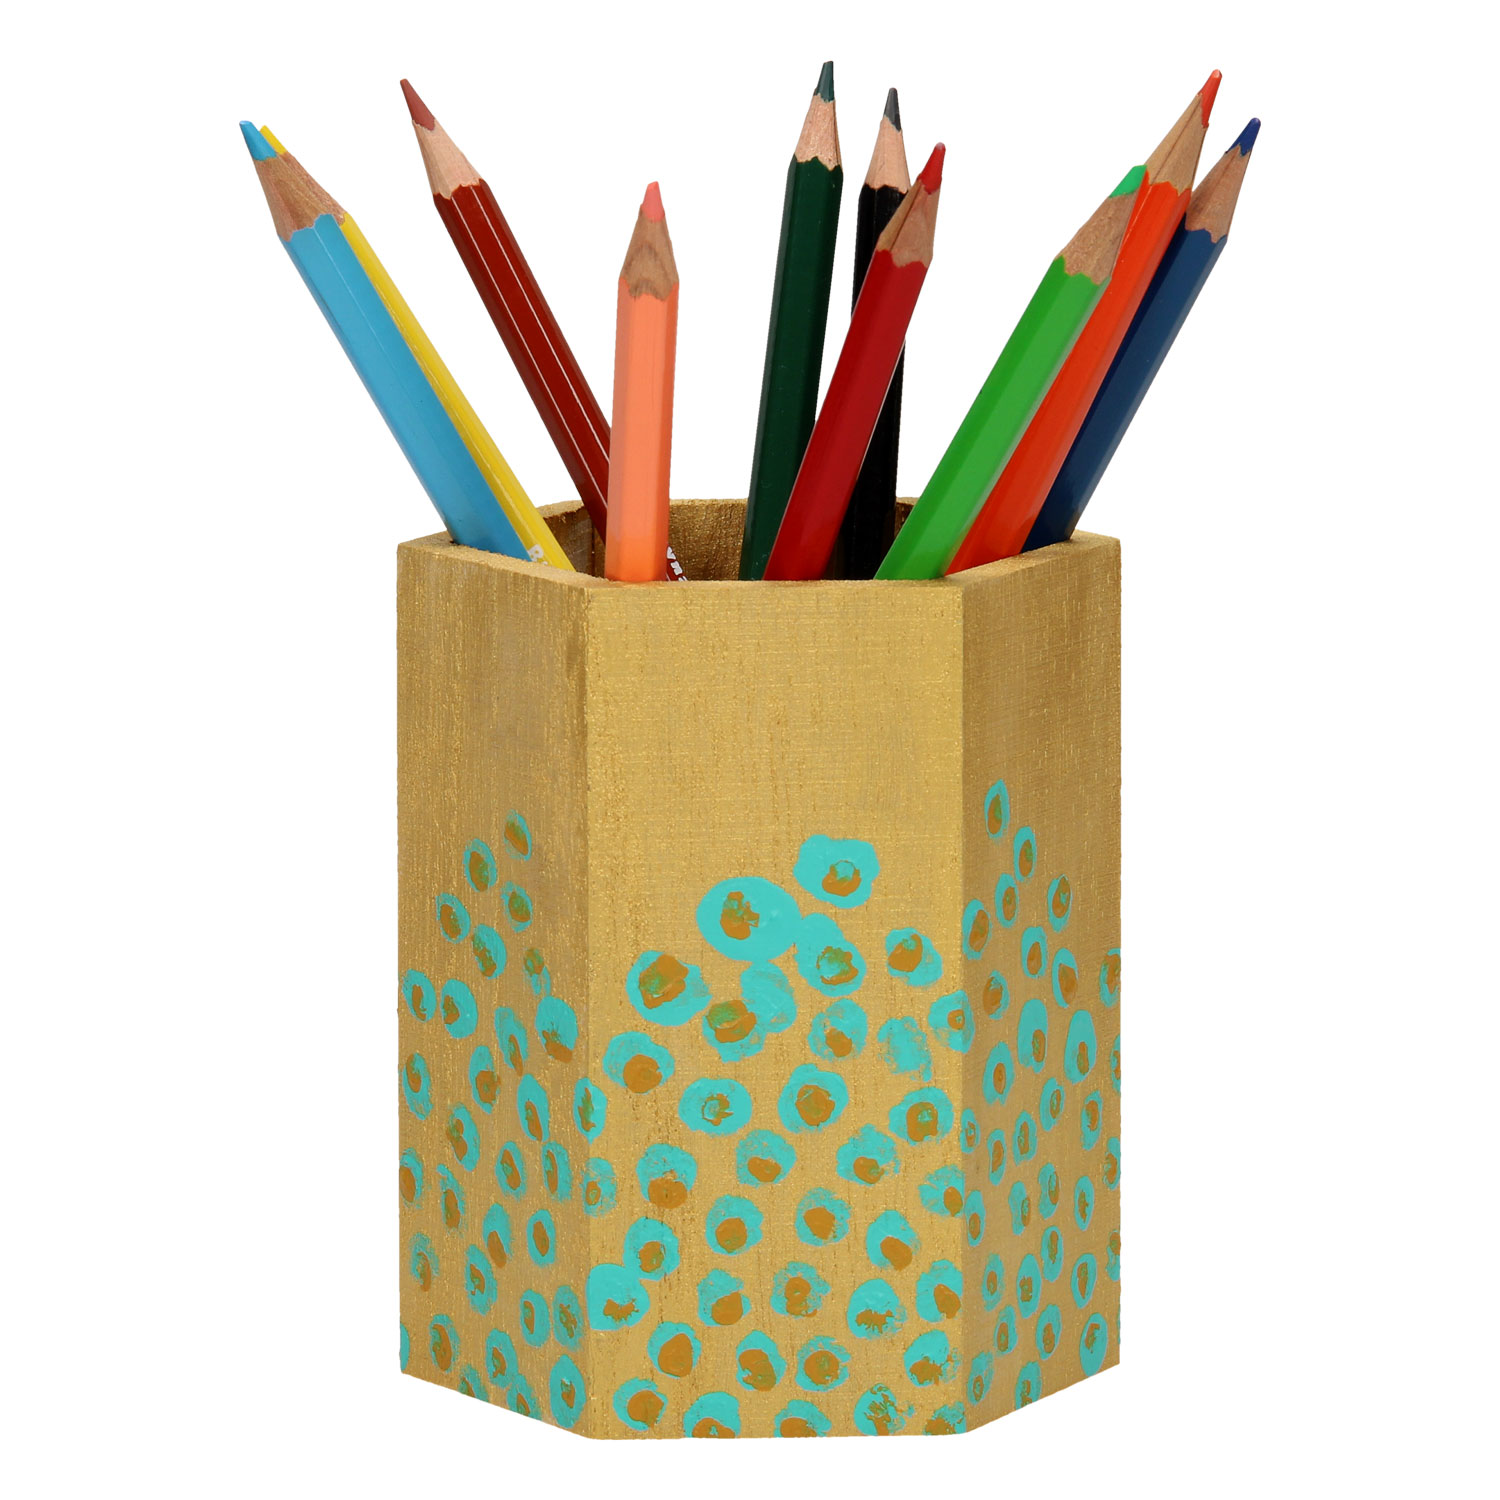 Décorez votre propre boîte à crayons en bois